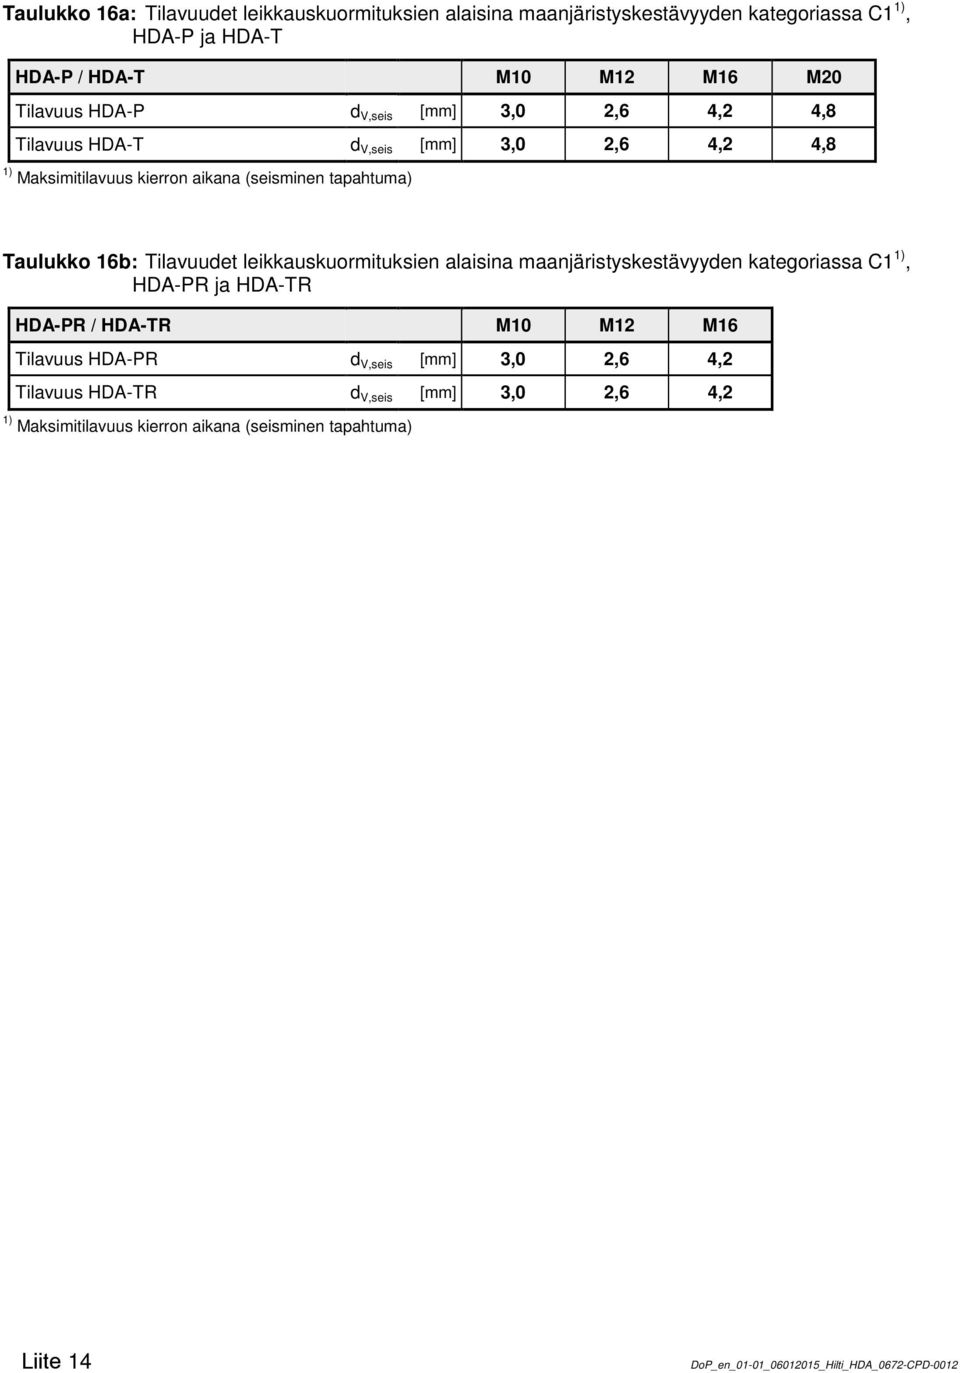 Taulukko 16b: Tilavuudet leikkauskuormituksien alaisina maanjäristyskestävyyden kategoriassa C1, HDA-PR ja HDA-TR Tilavuus